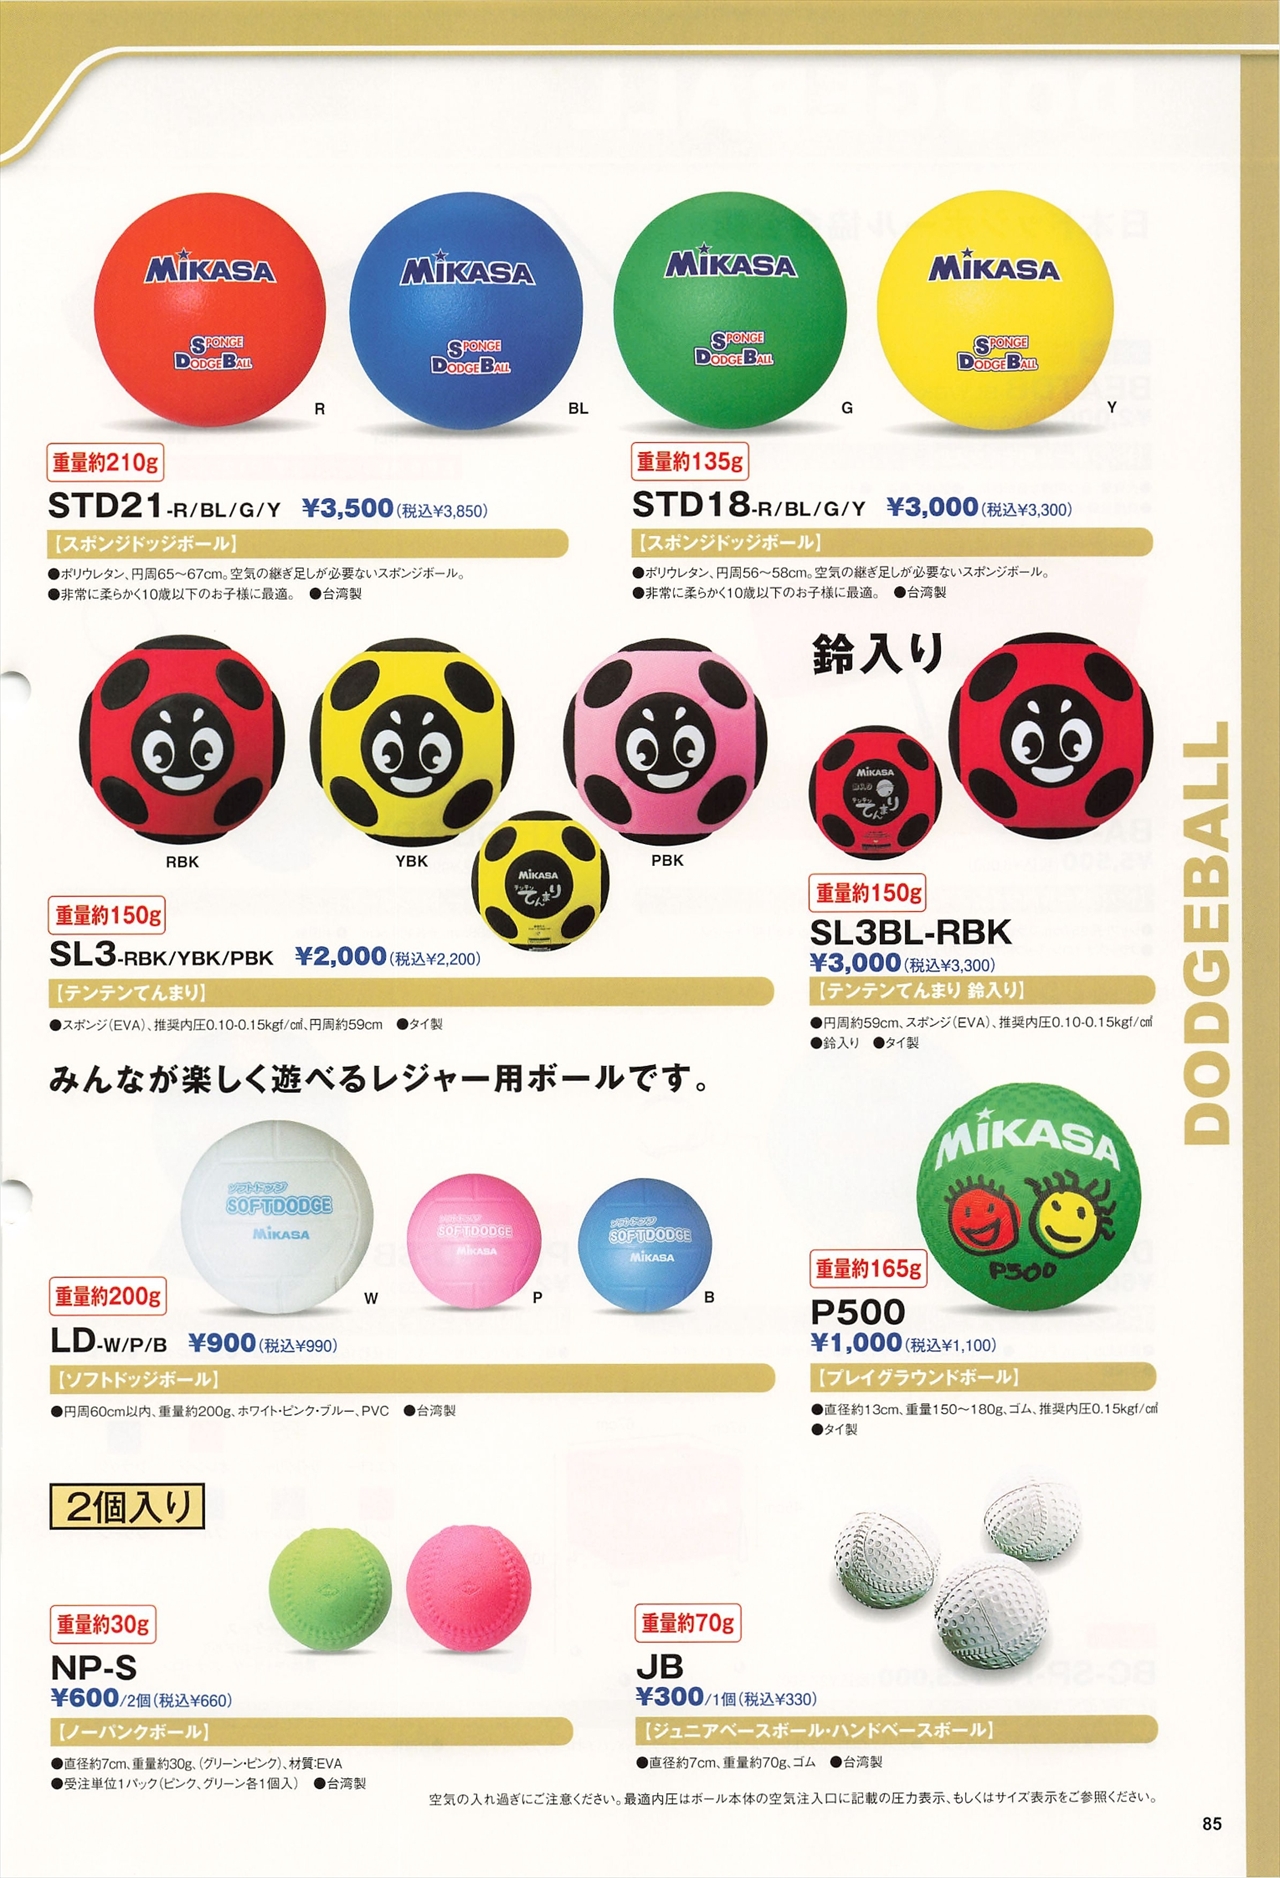 特価商品 ミカサ MIKASA ソフトドッチボール ブルー LD-B